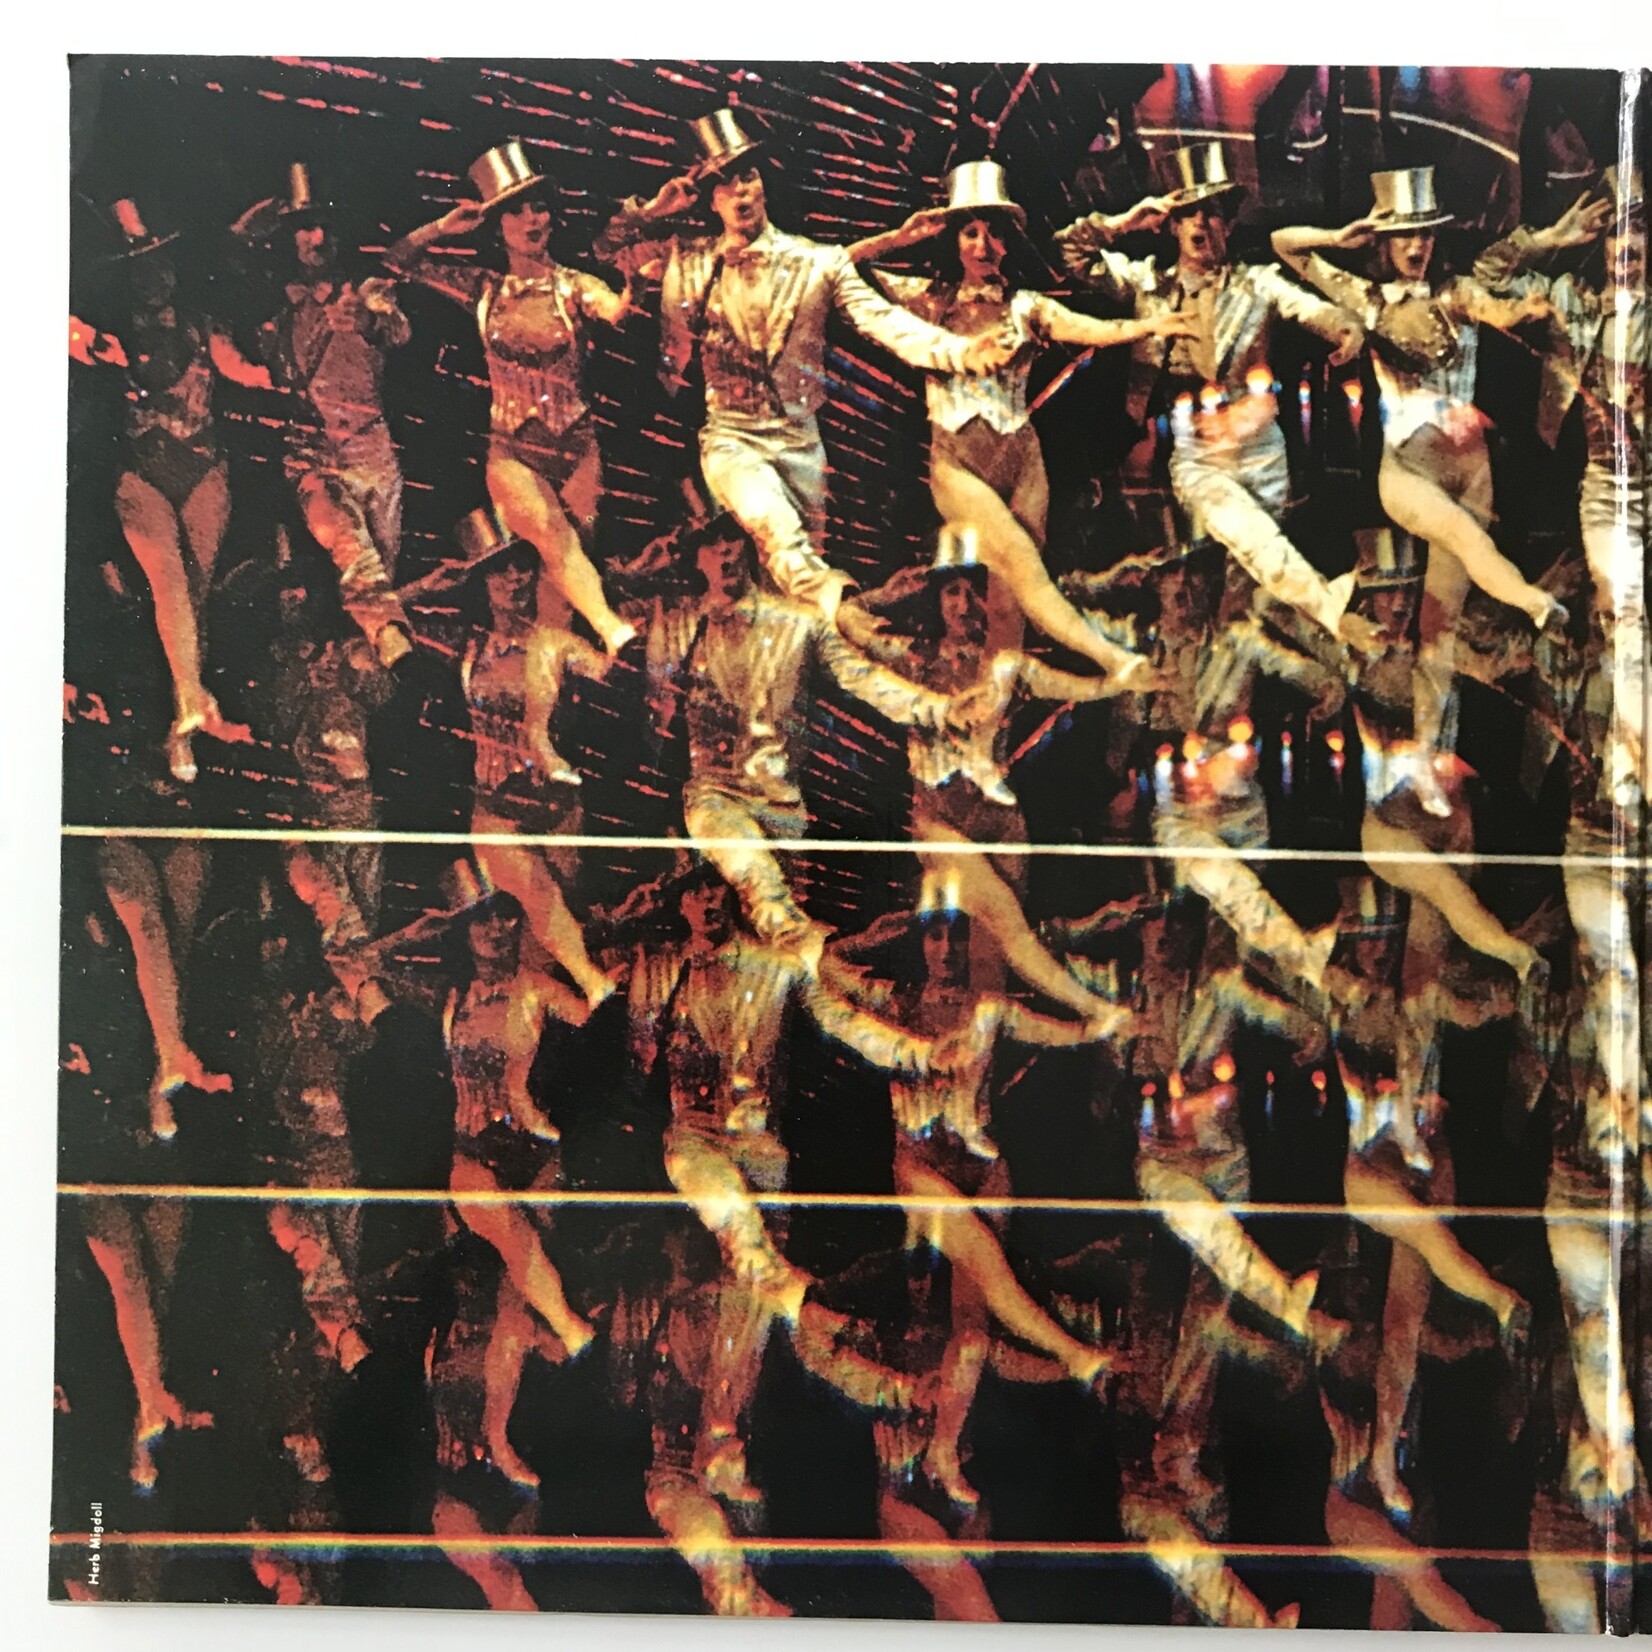 Chorus Line Original Cast Recording - Vinyl LP (USED)